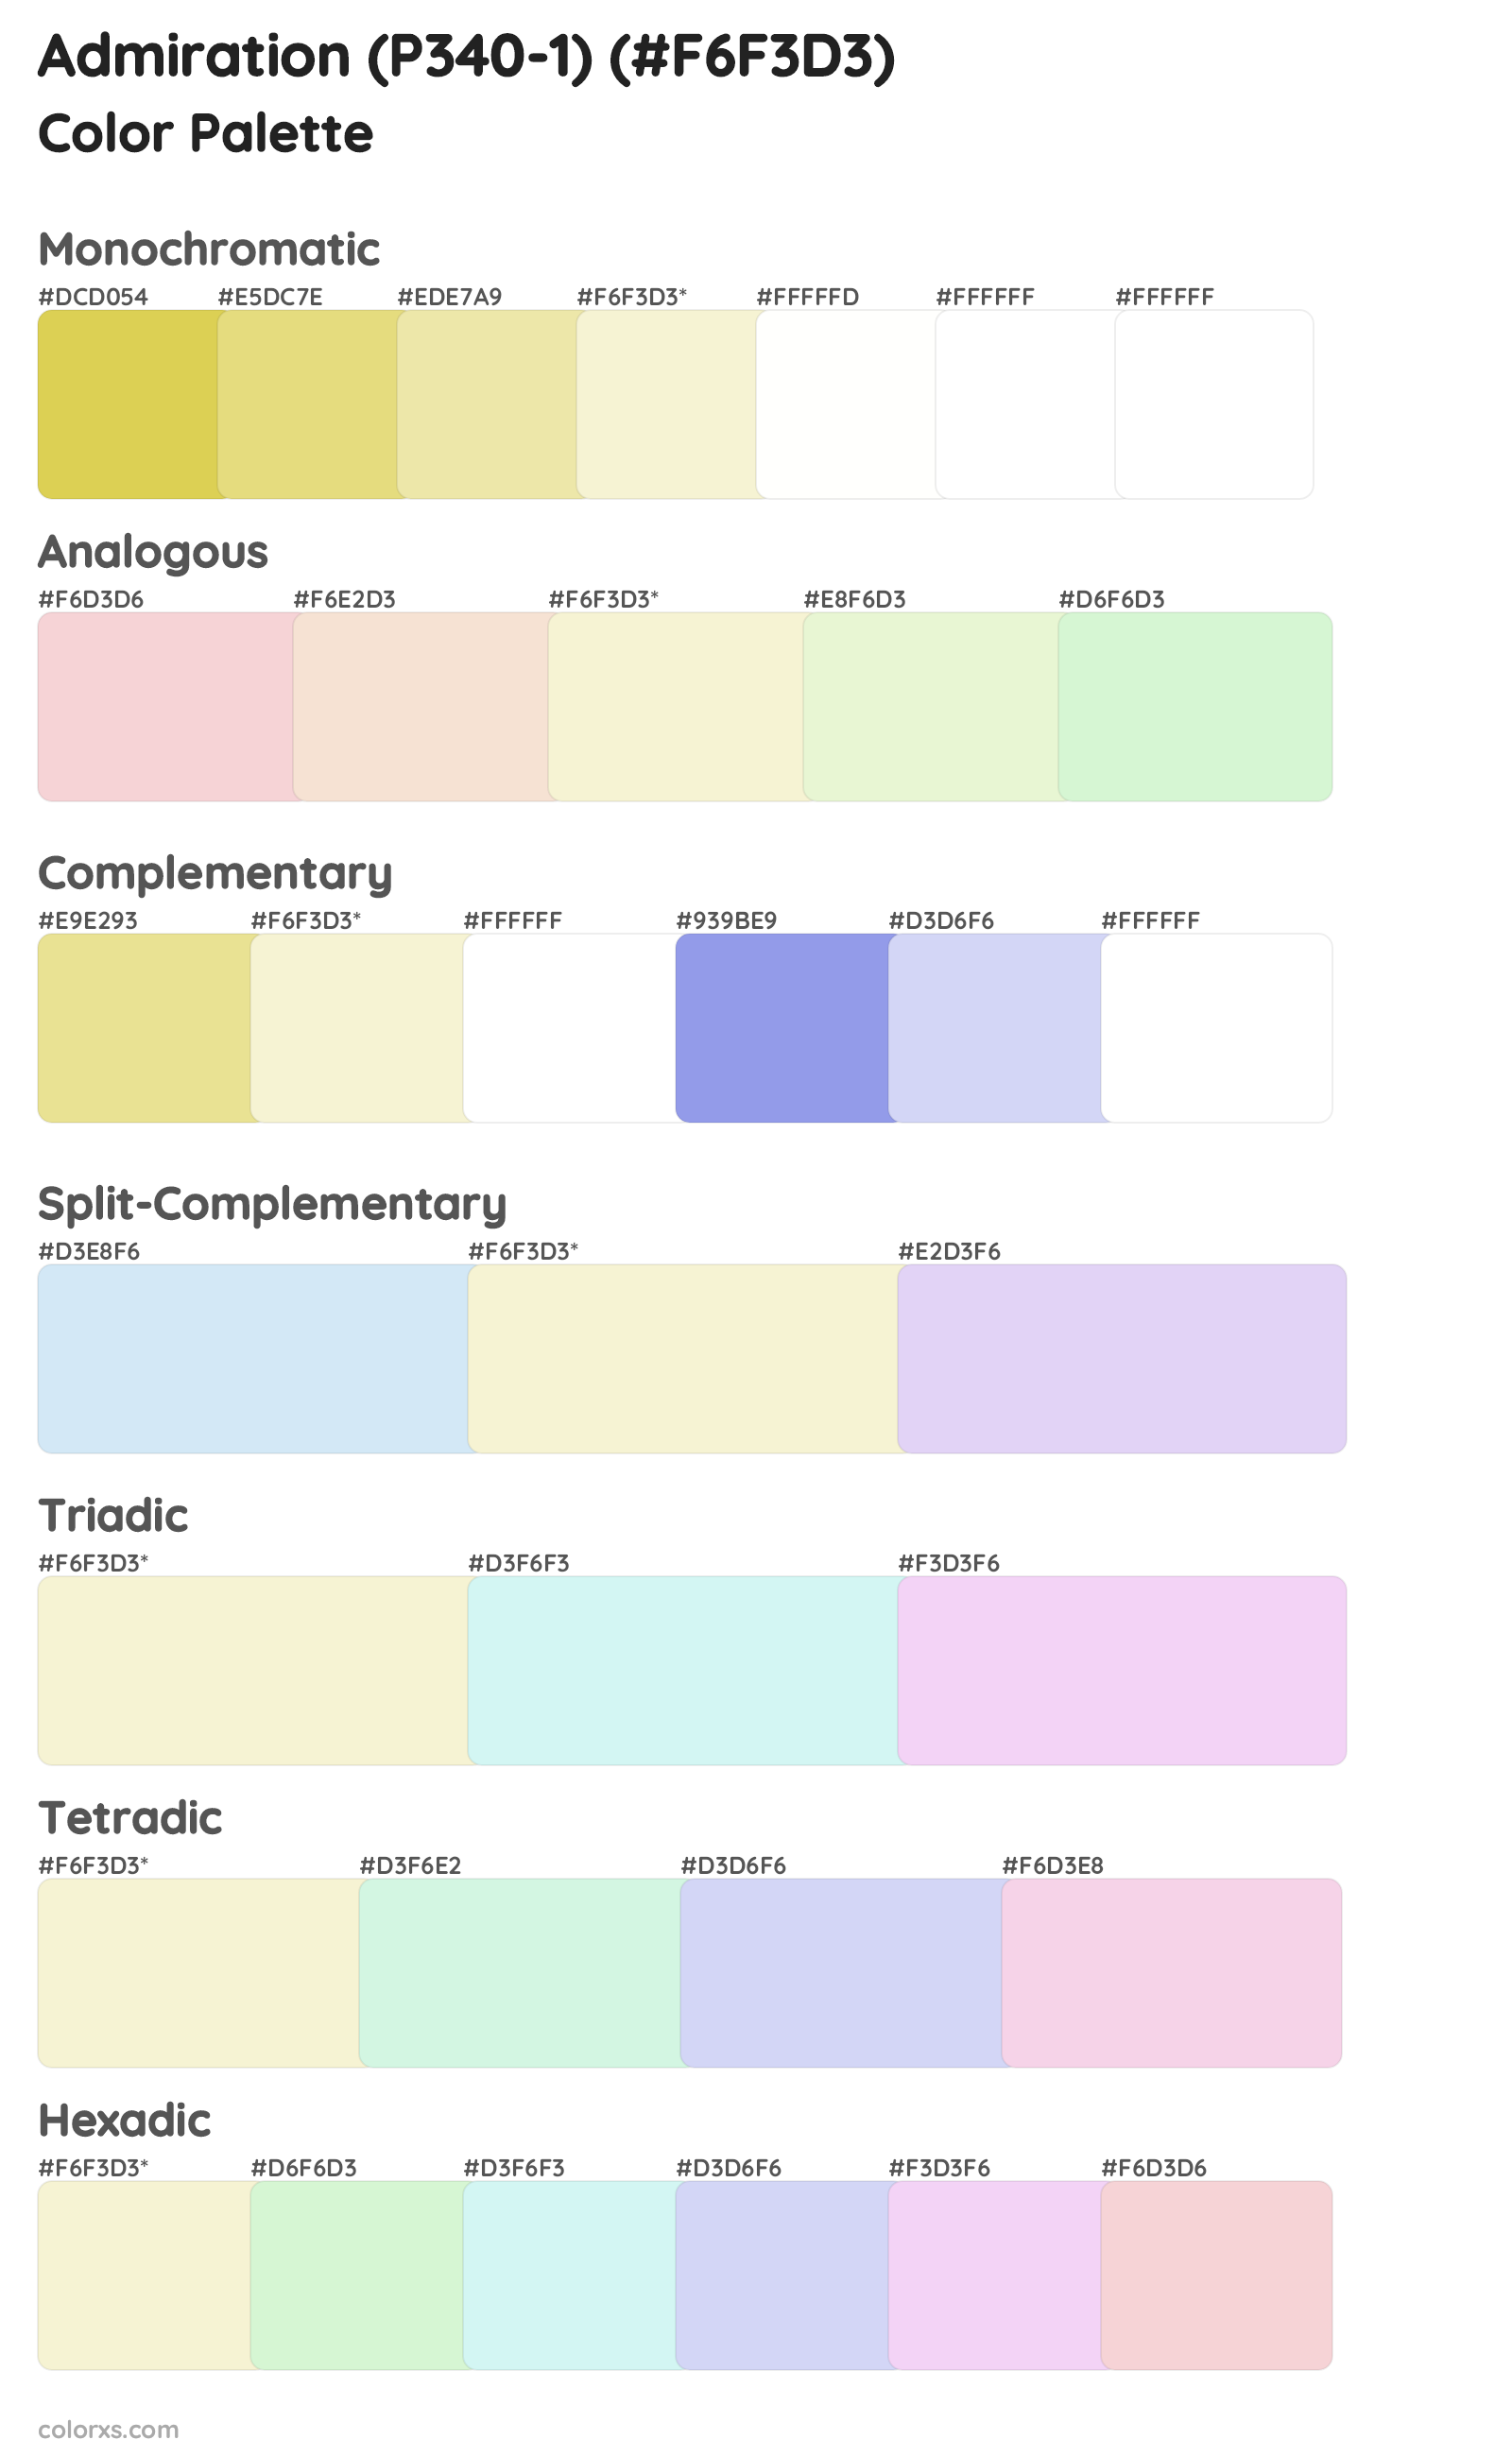 Admiration (P340-1) Color Scheme Palettes